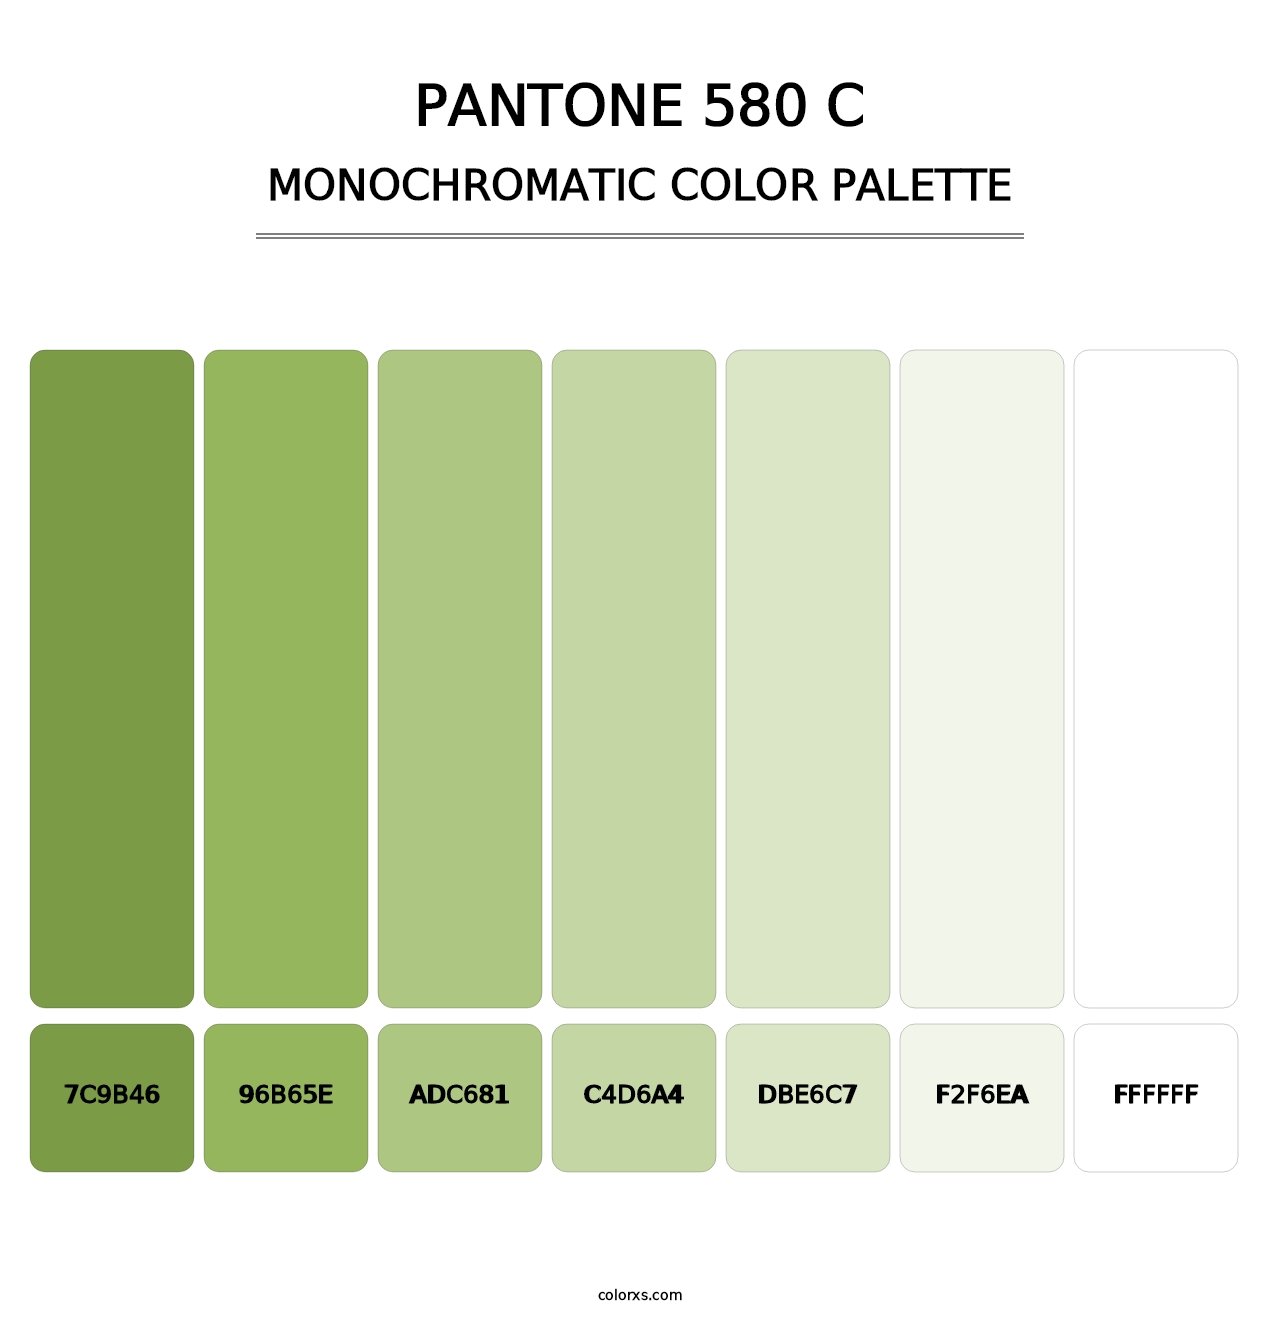 PANTONE 580 C - Monochromatic Color Palette